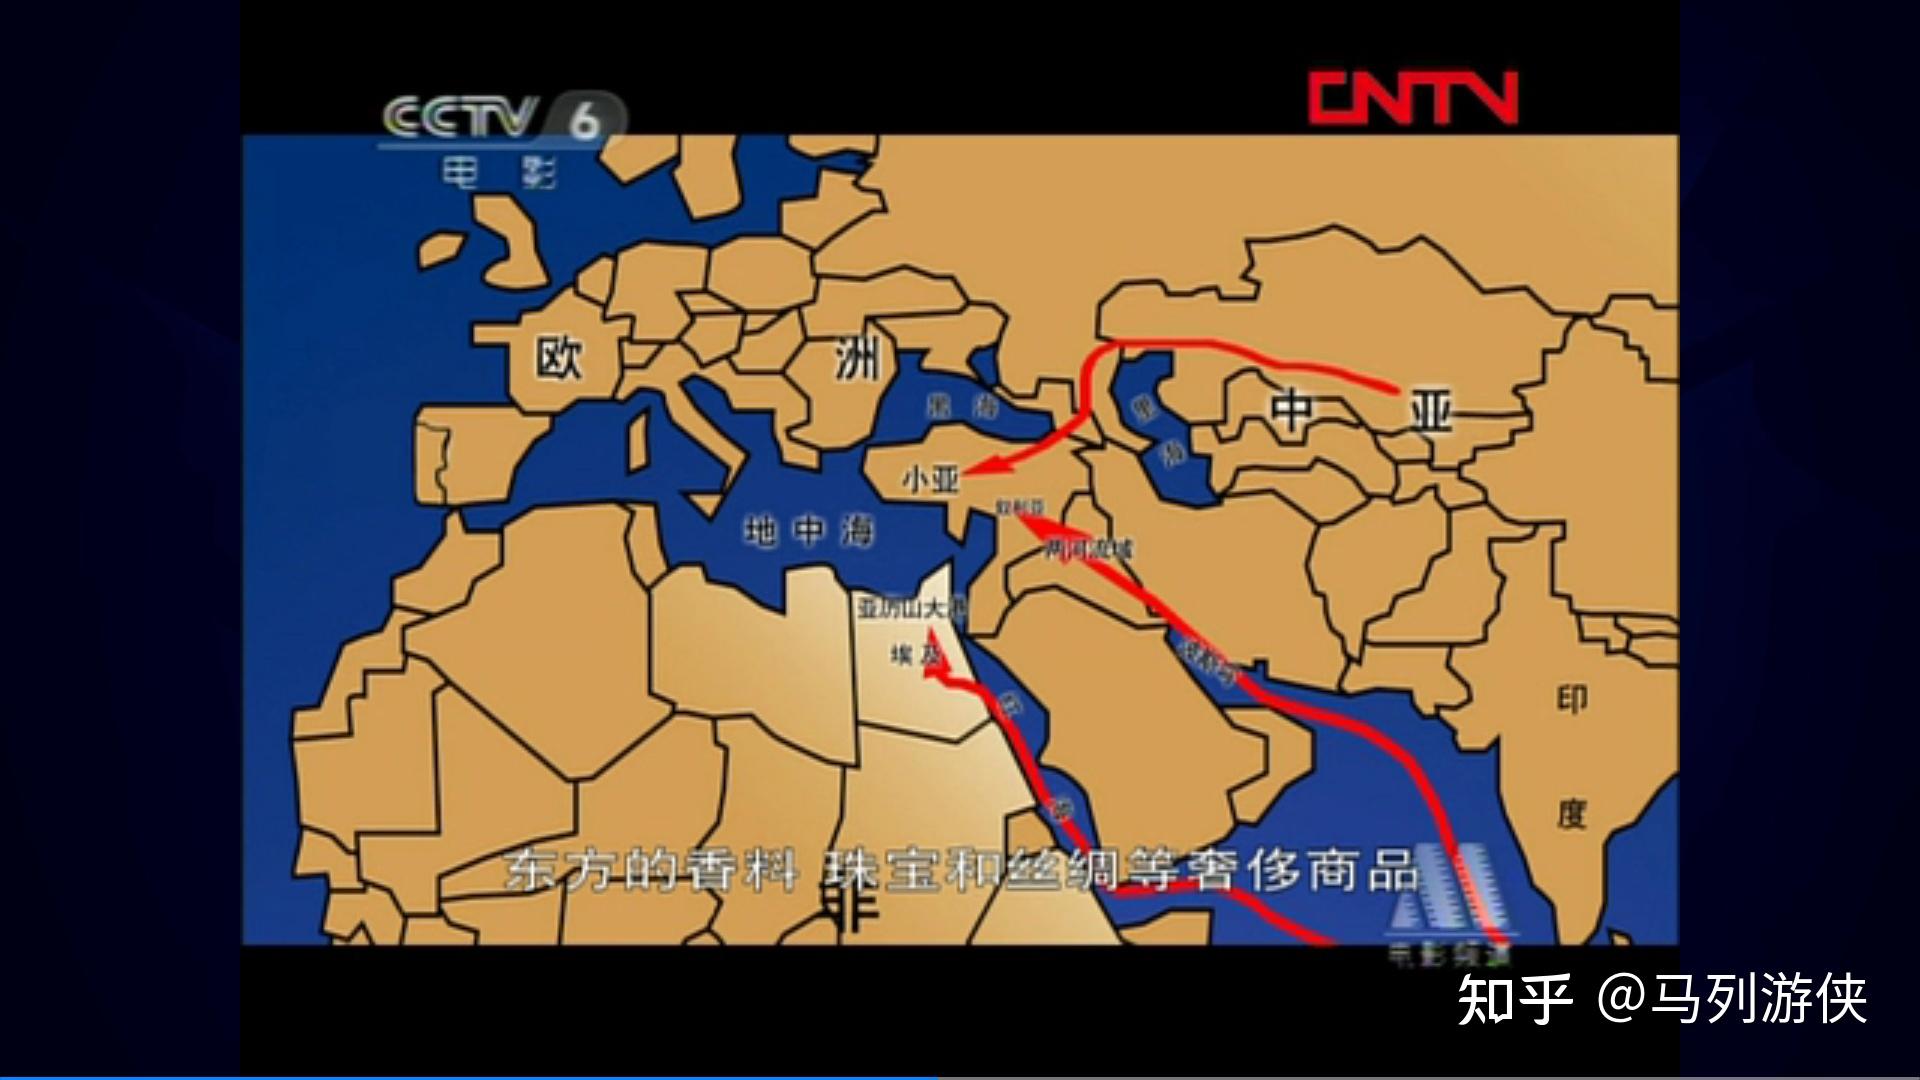 路线:一条是陆路,由中亚沿着里海和黑海到达小亚;另外两条是海陆并用